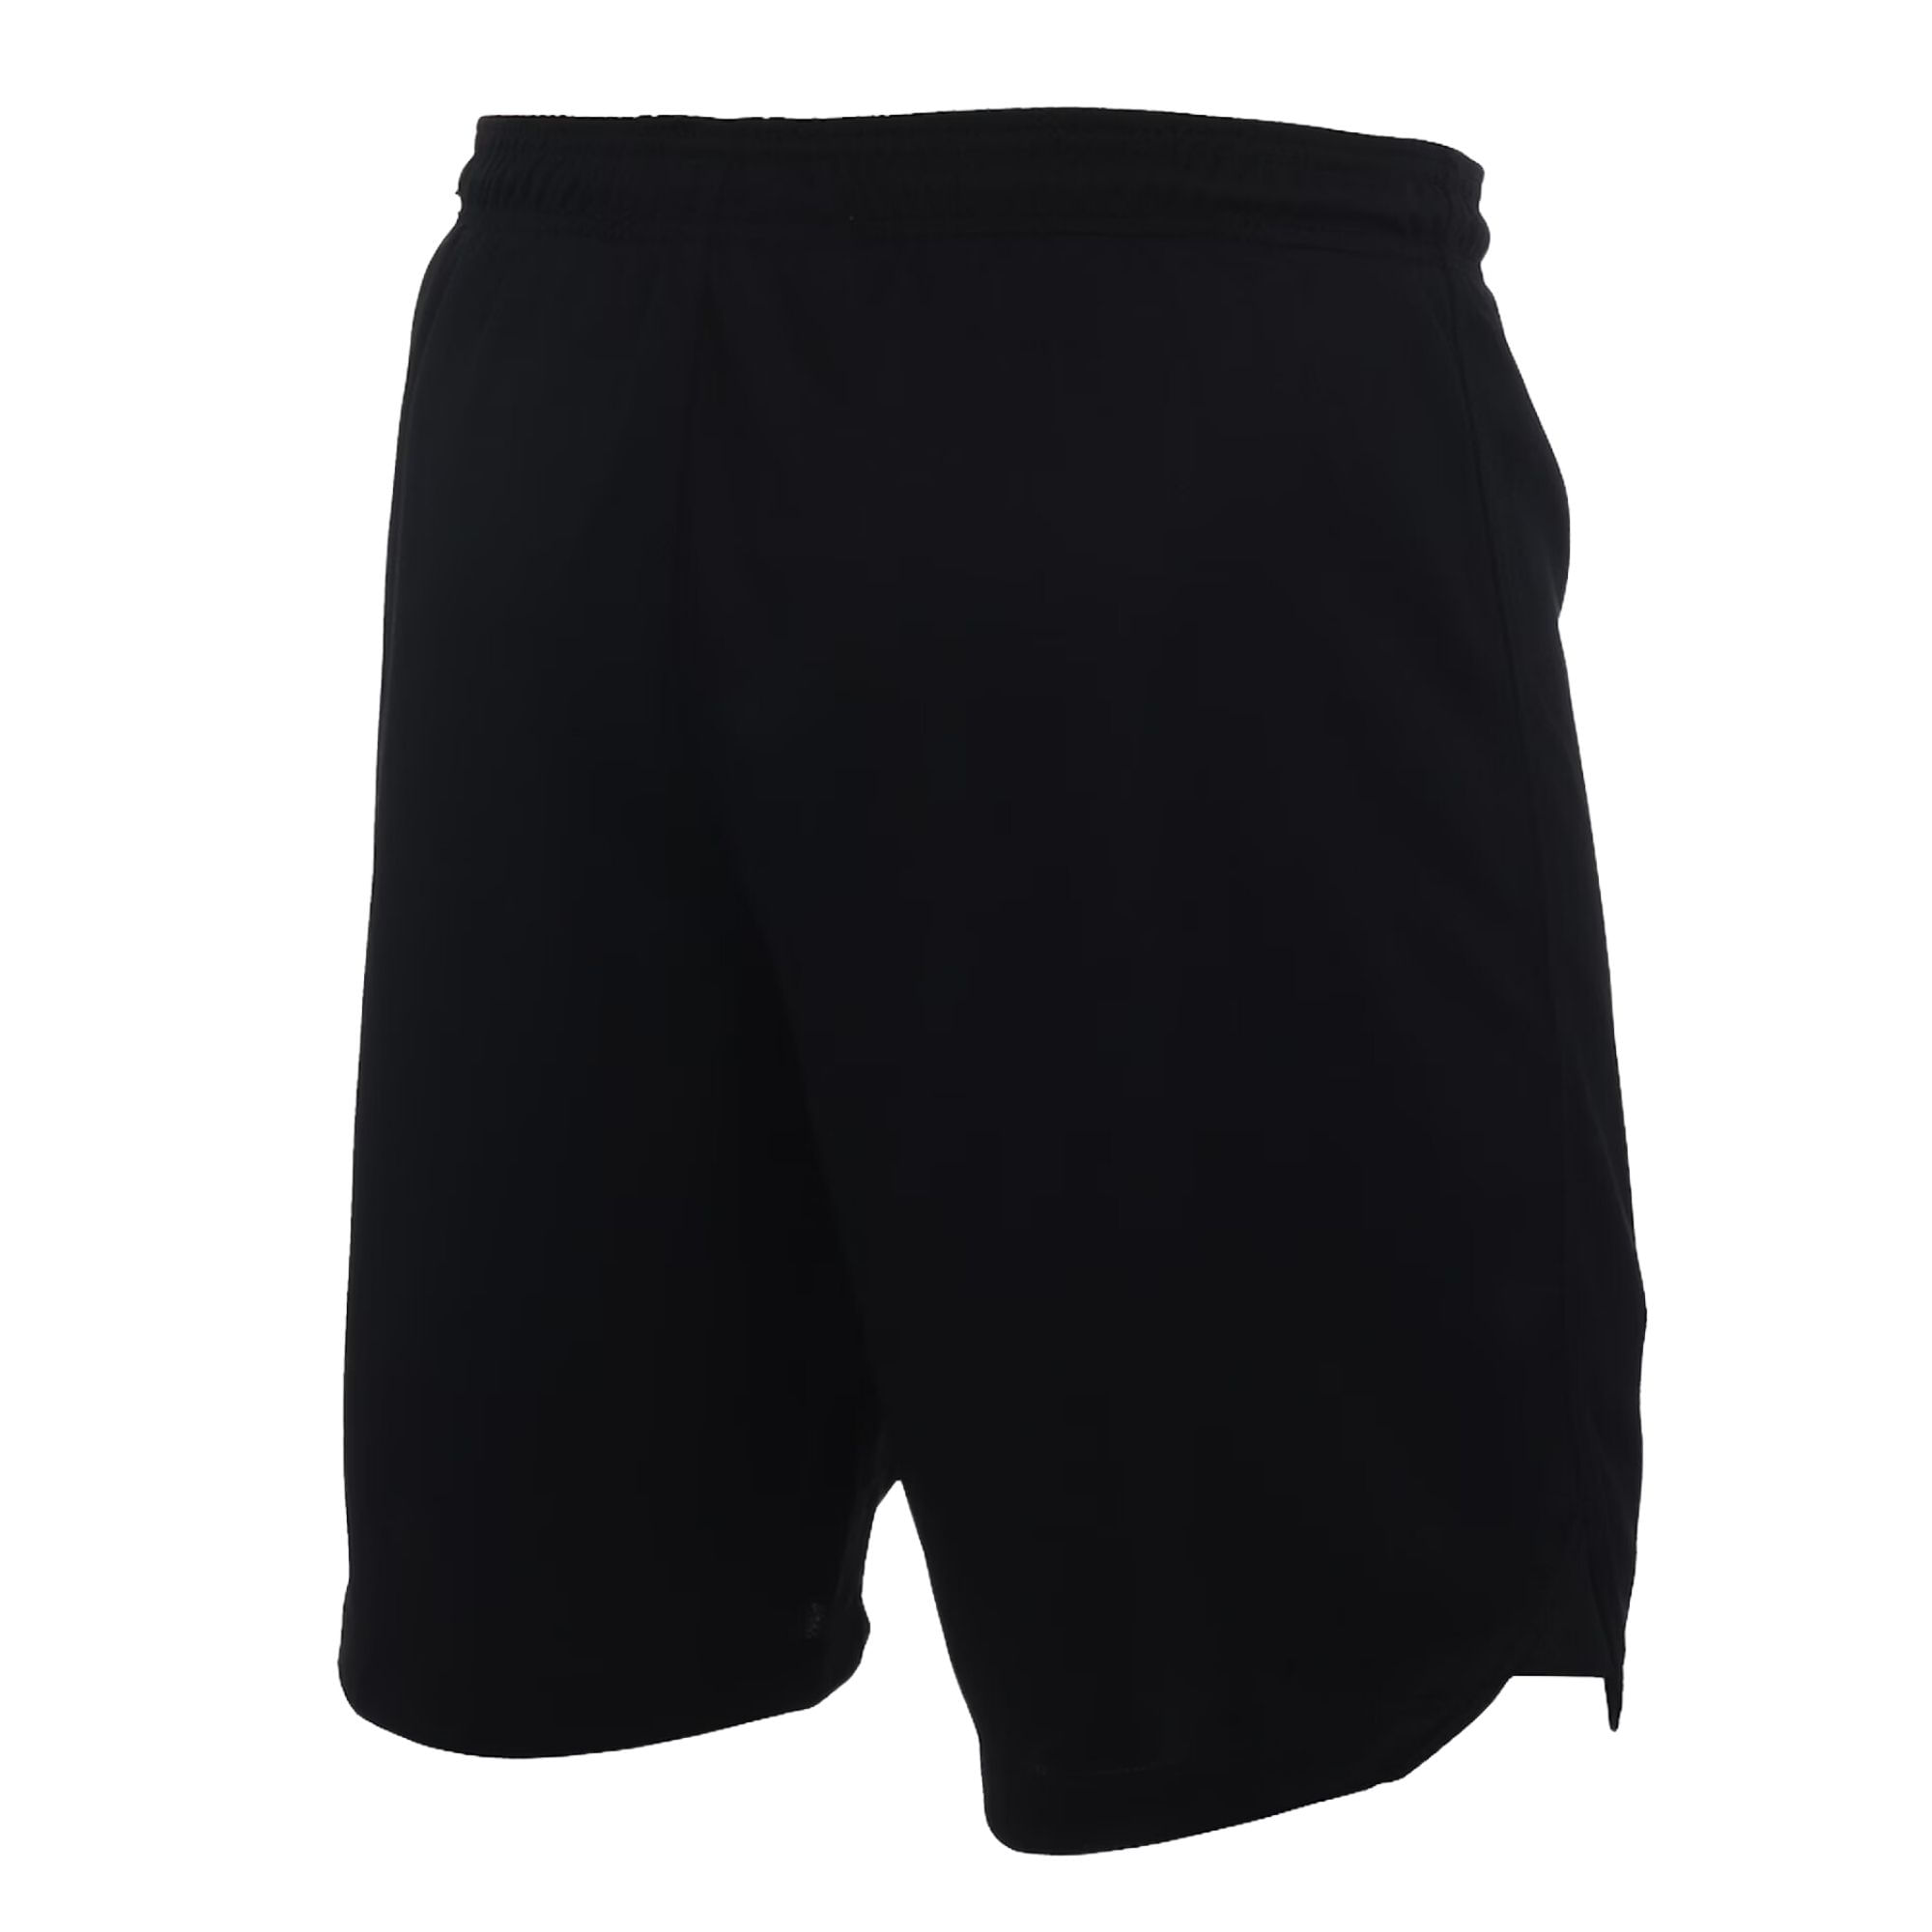 Shorts Nike Dri-Fit Icon Masculino - Preto - Bayard Esportes